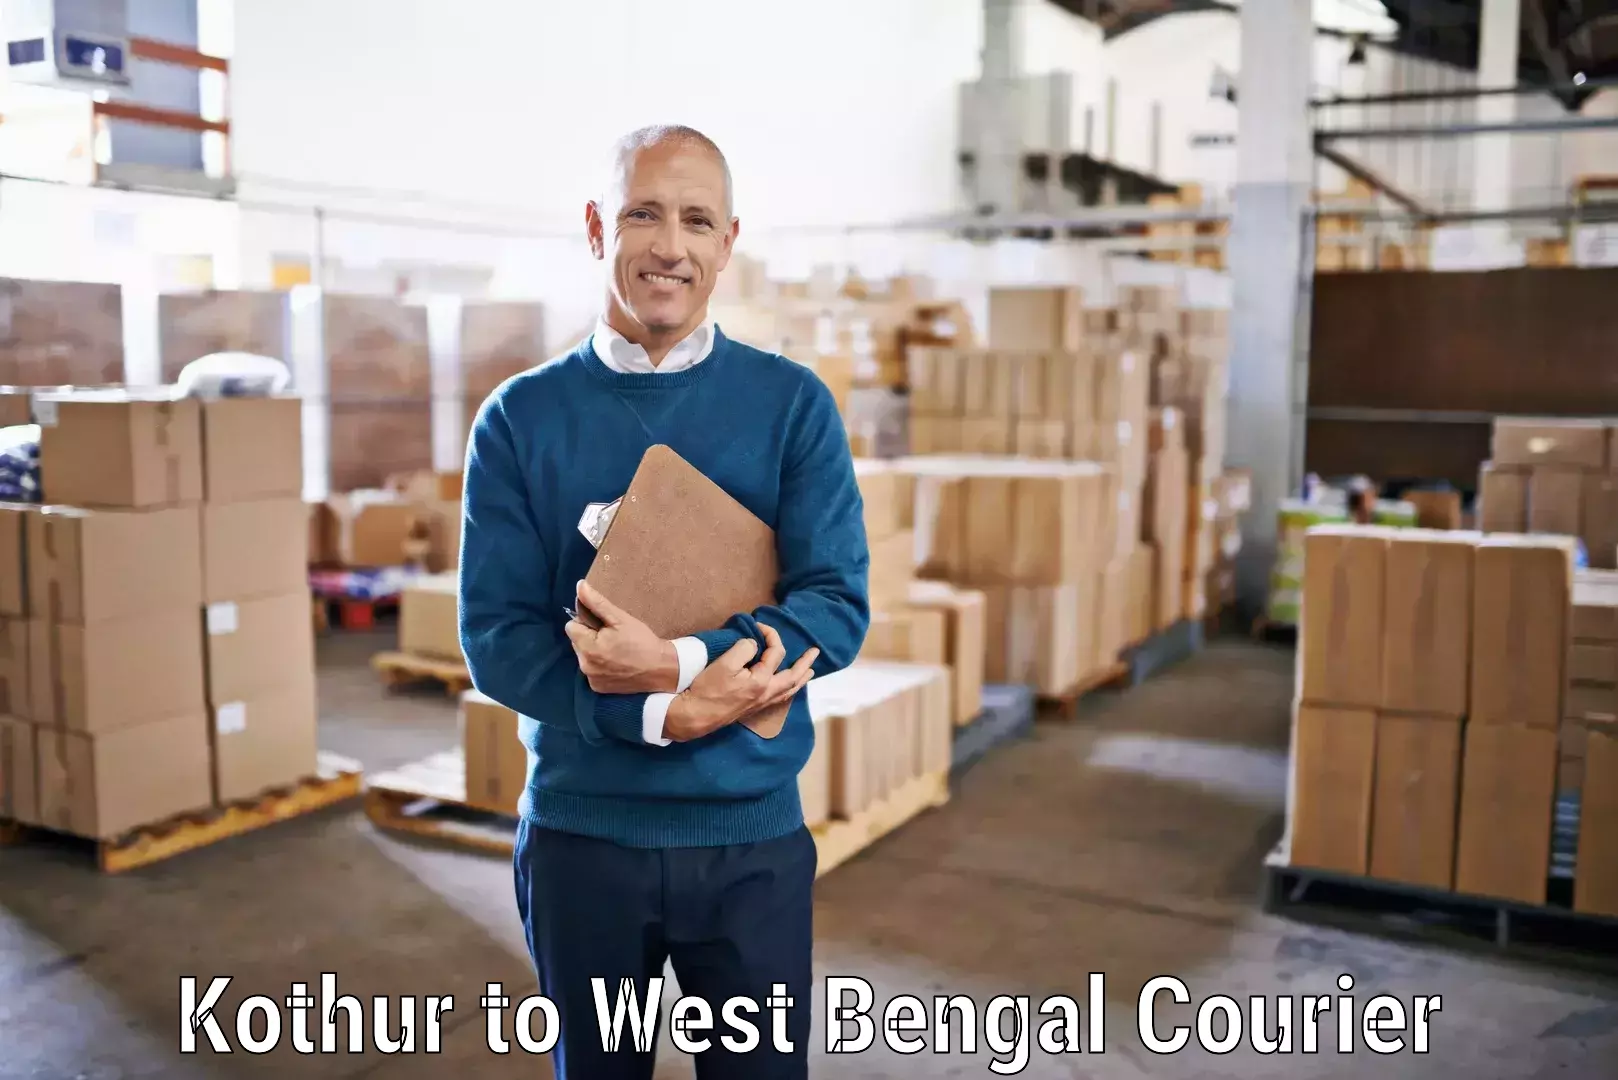 Customer-focused courier Kothur to Bandel